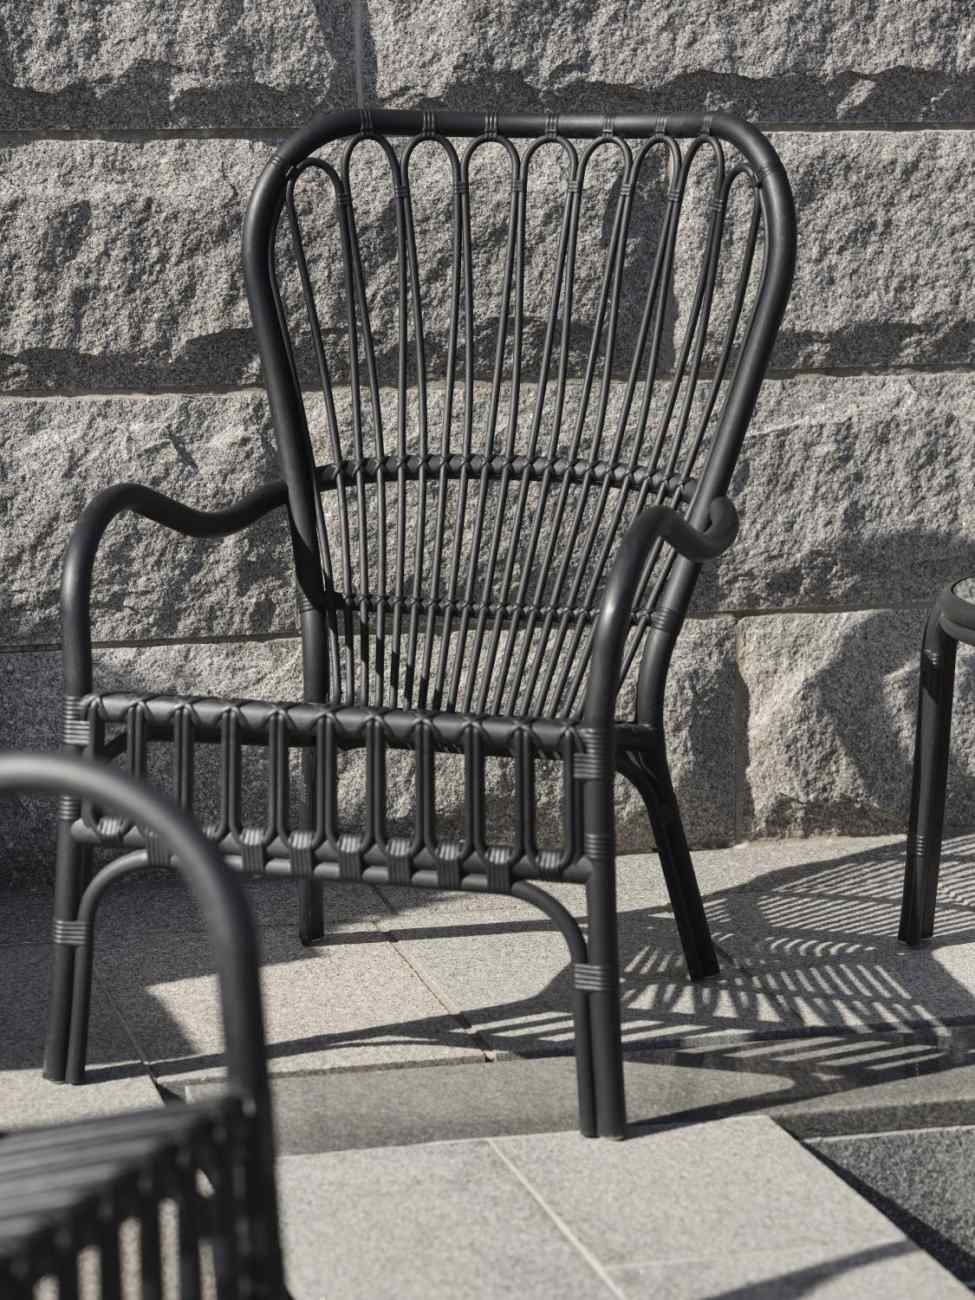 Der Gartensessel Waltz überzeugt mit seinem modernen Design. Gefertigt wurde er aus Kunststoff, welches einen schwarzen Farbton besitzt. Das Gestell ist auch aus Kunststoff und hat eine schwarze Farbe. Die Sitzhöhe des Sessels beträgt 41 cm.